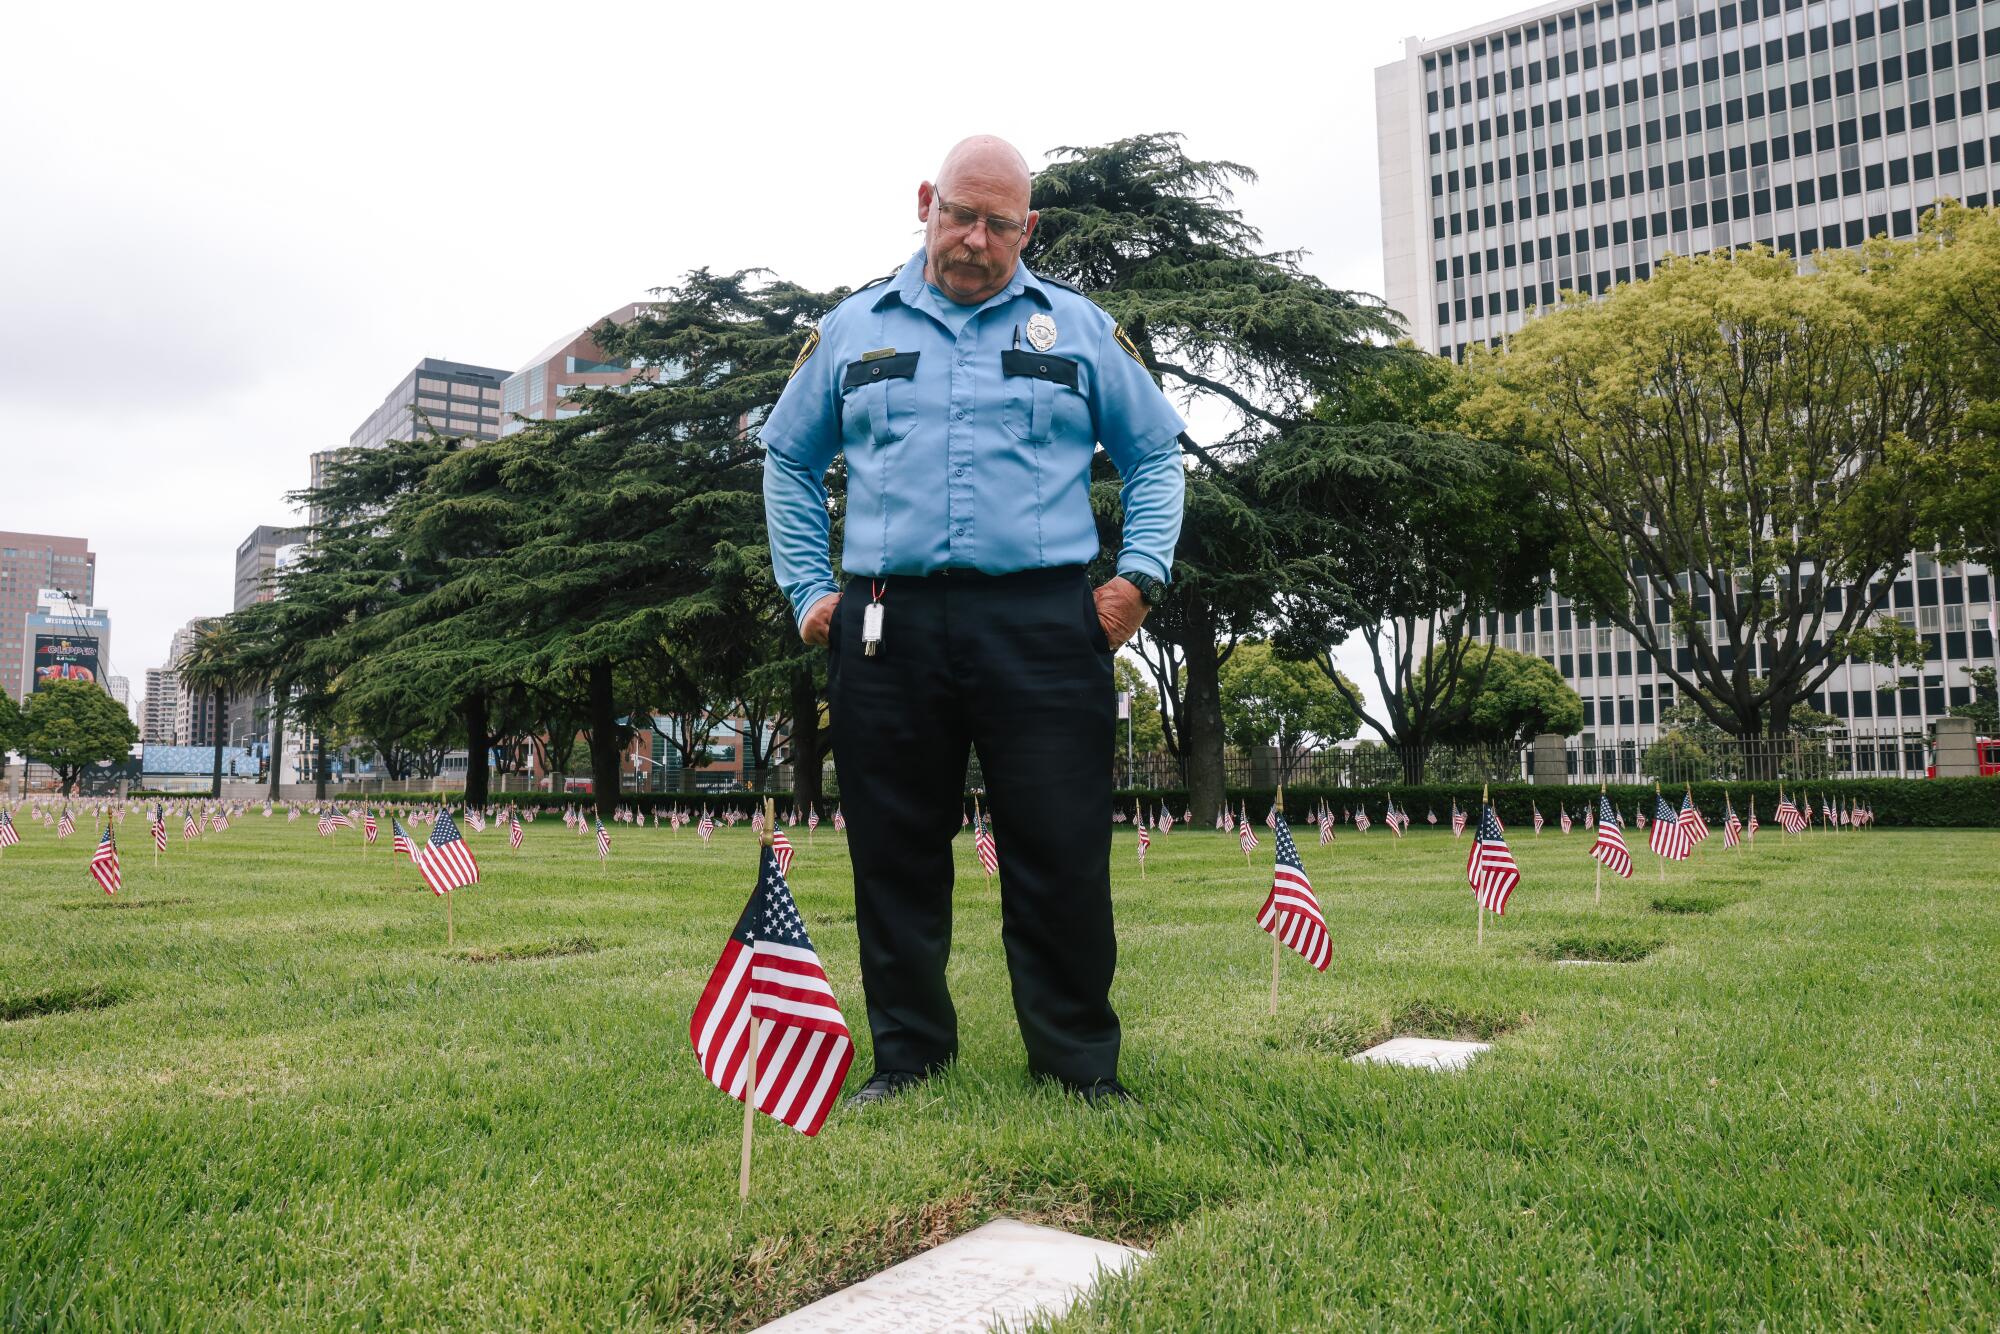 Скотт Сарджент, который работает охранником, смотрит вниз на могилу члена своей семьи, Льюиса Л. Оуэнса.